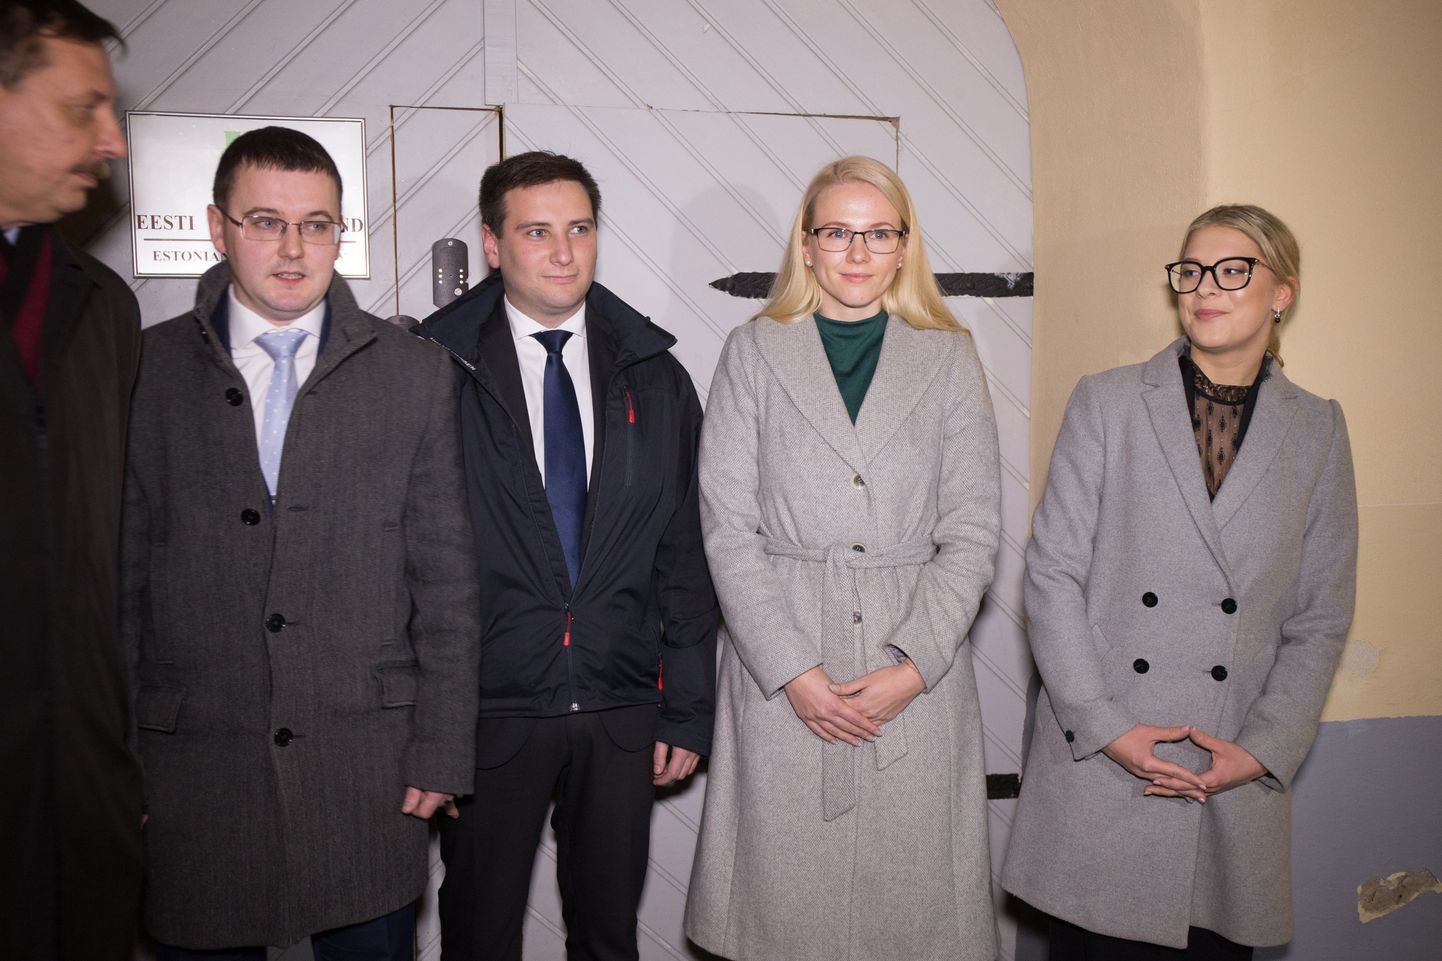 Keskerakonna Tallinna nõukogu kinnitas neli Tallinna linnaosavanemat: Jaanus Riibe, Vladimir Svet, Alina Tubli ja Grete Šillis.